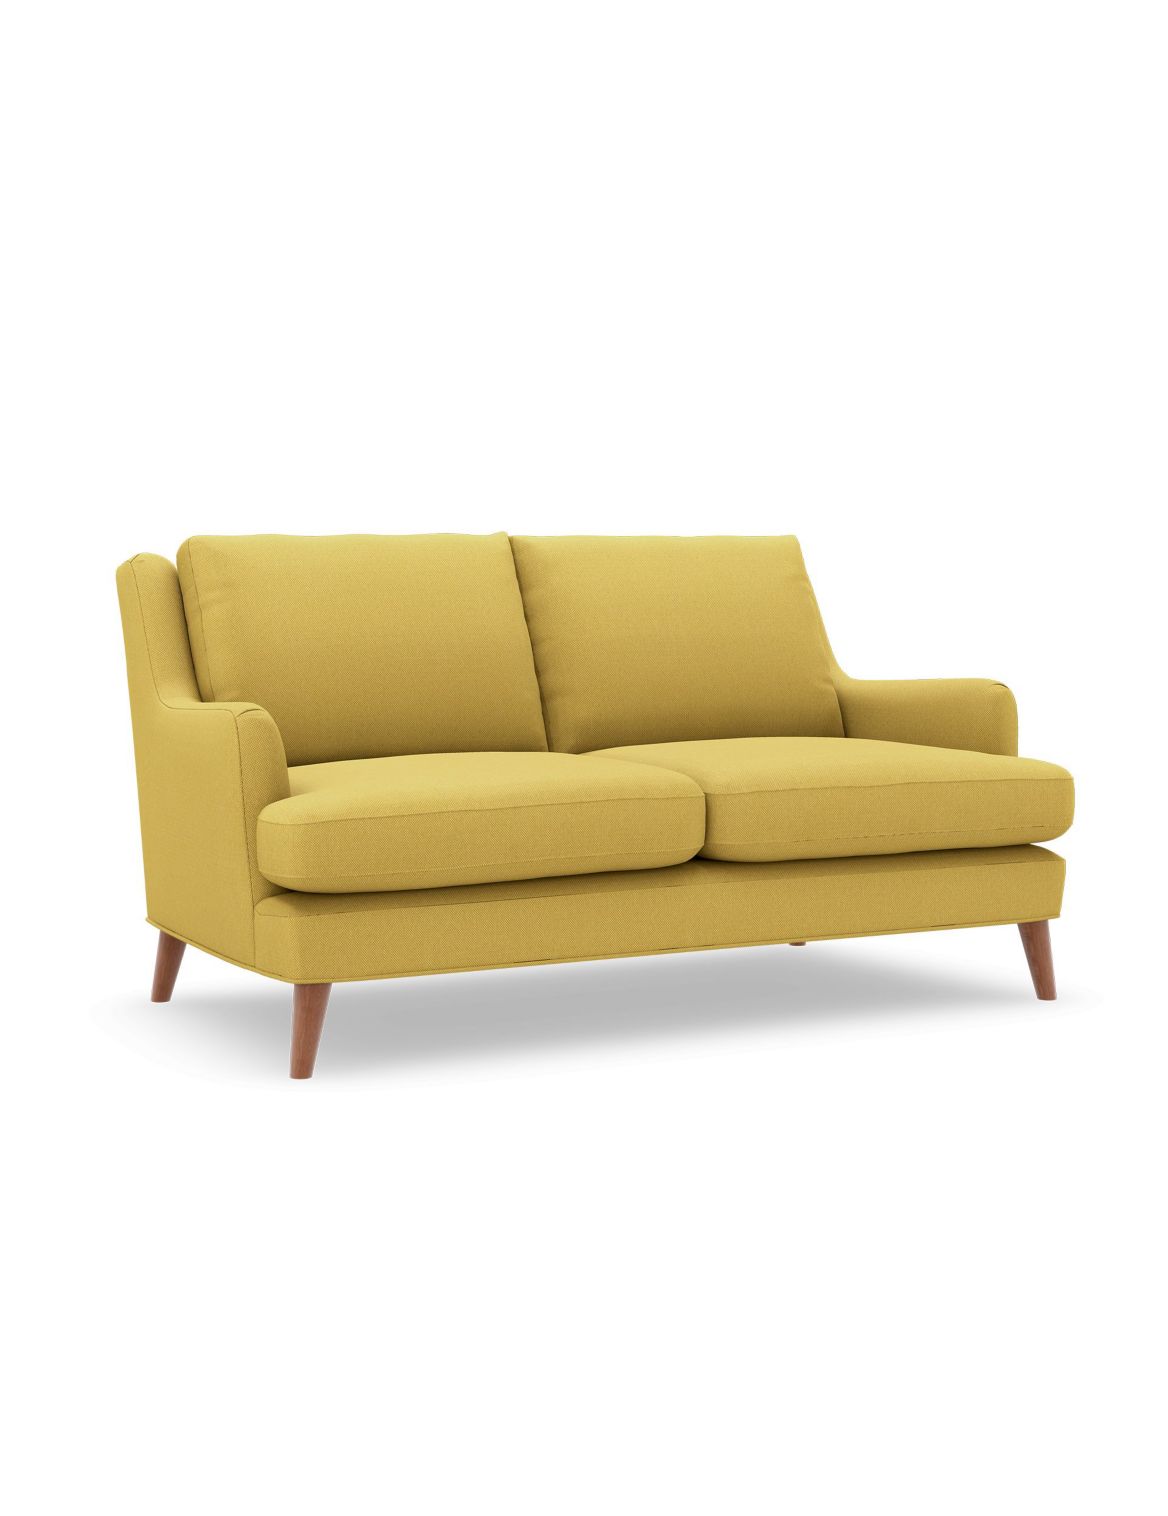 Ashton Small Sofa yellow